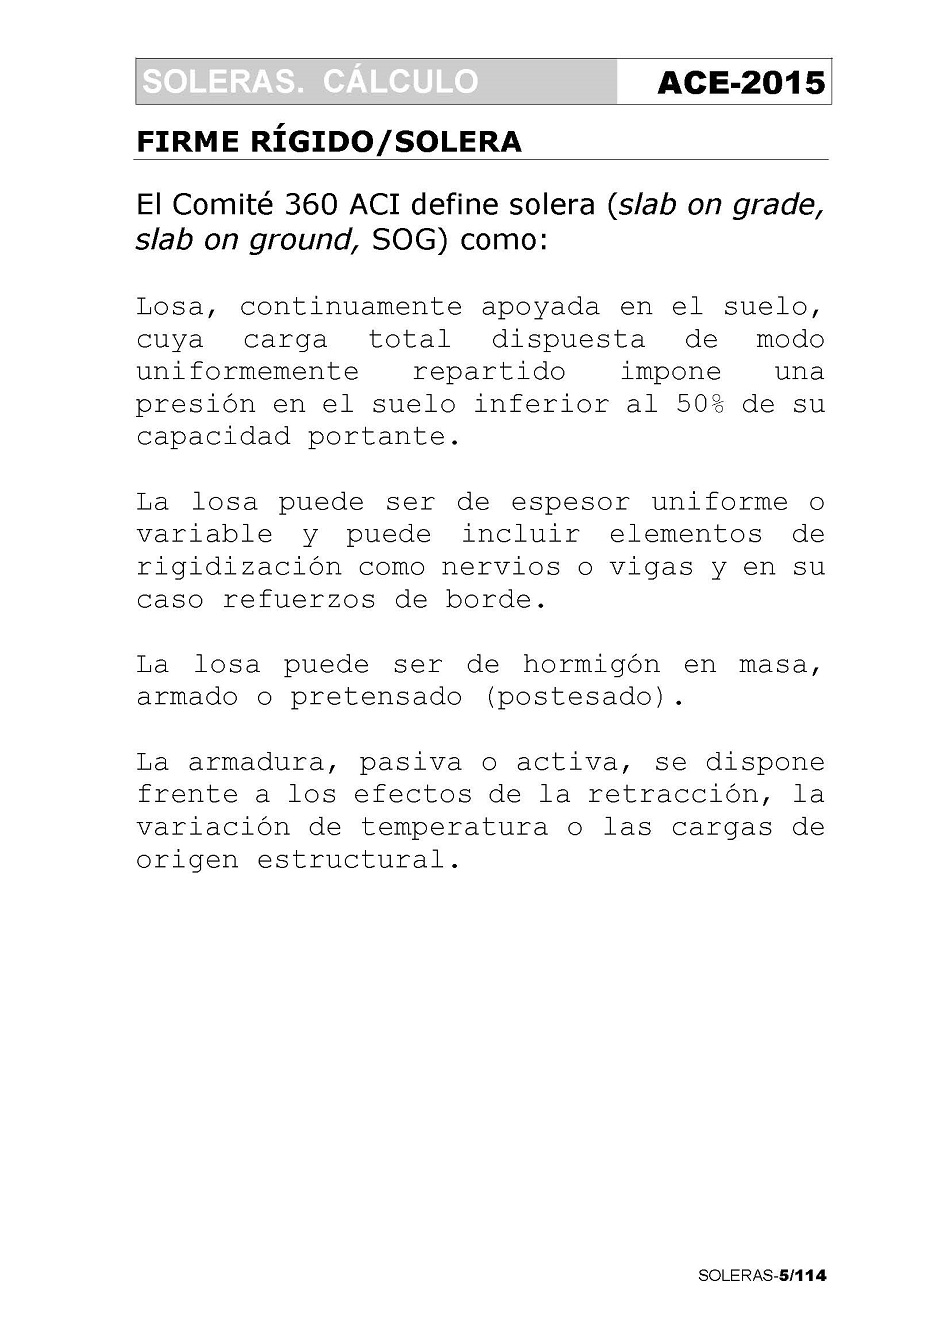 Cálculo de Soleras de Hormigón. Página 05